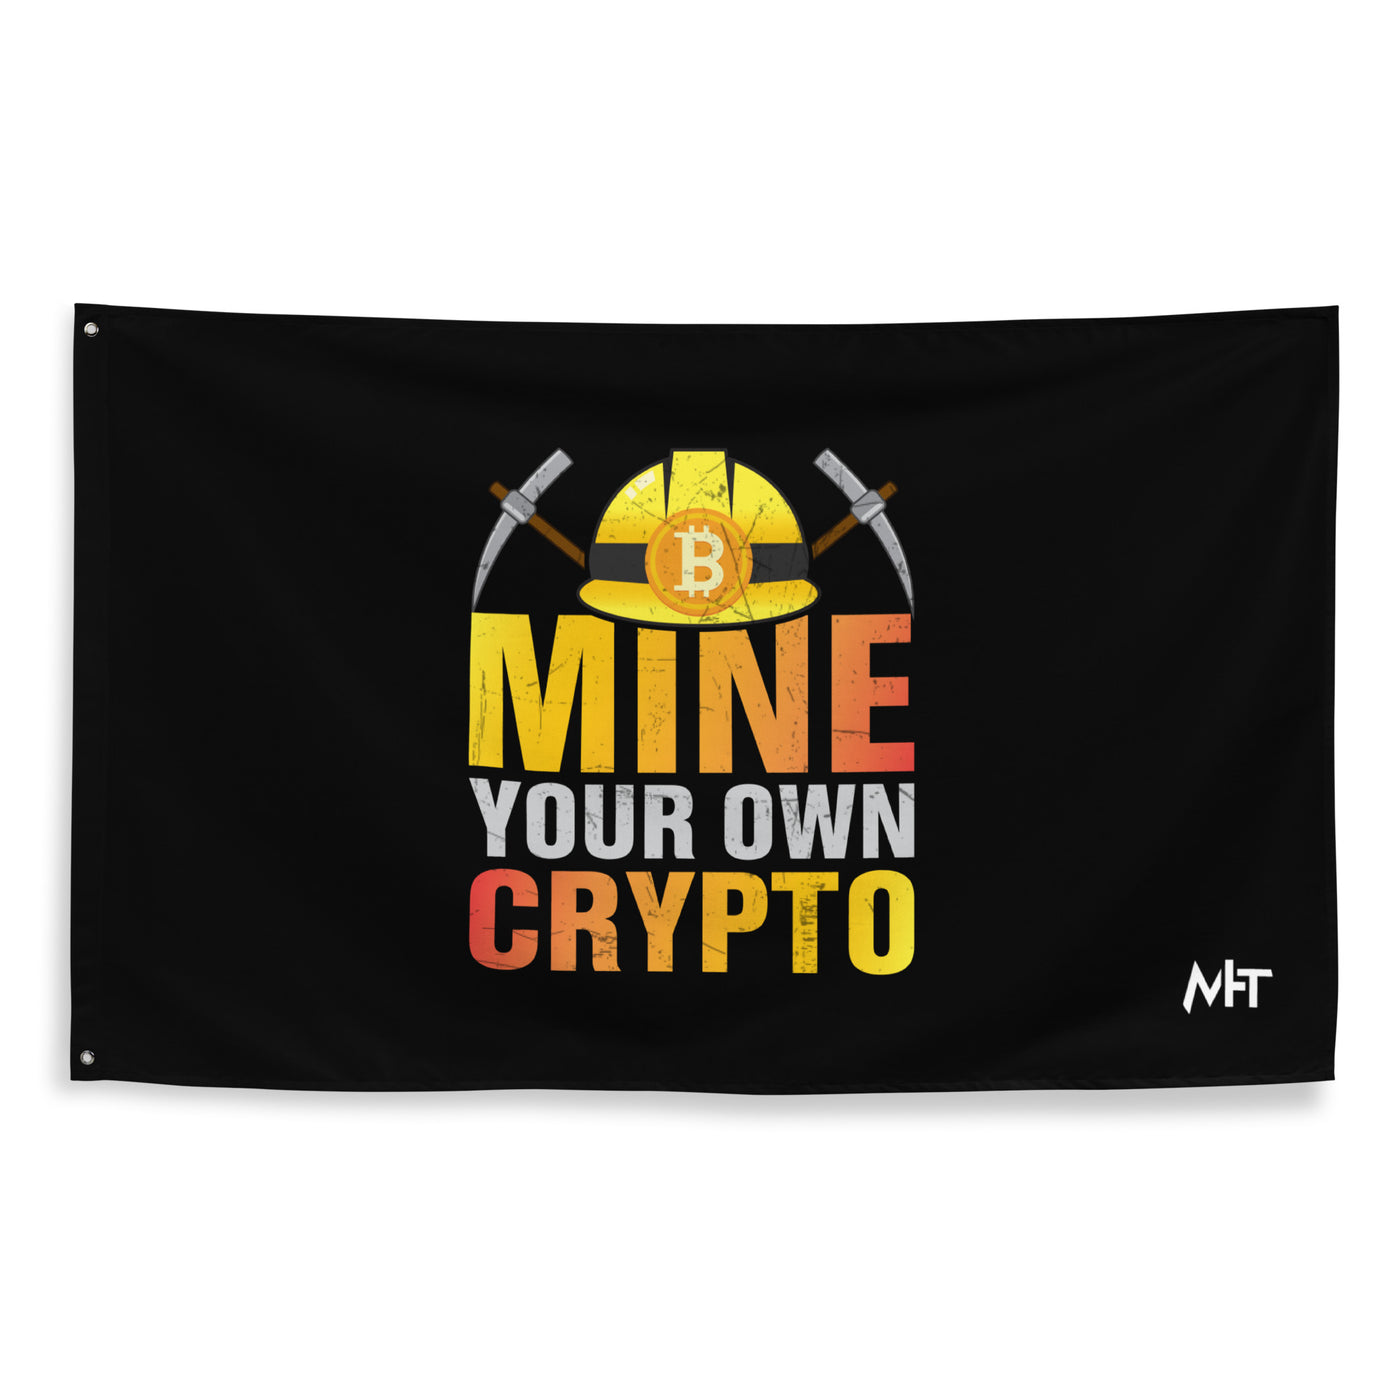 Mine your own Crypto - Flag